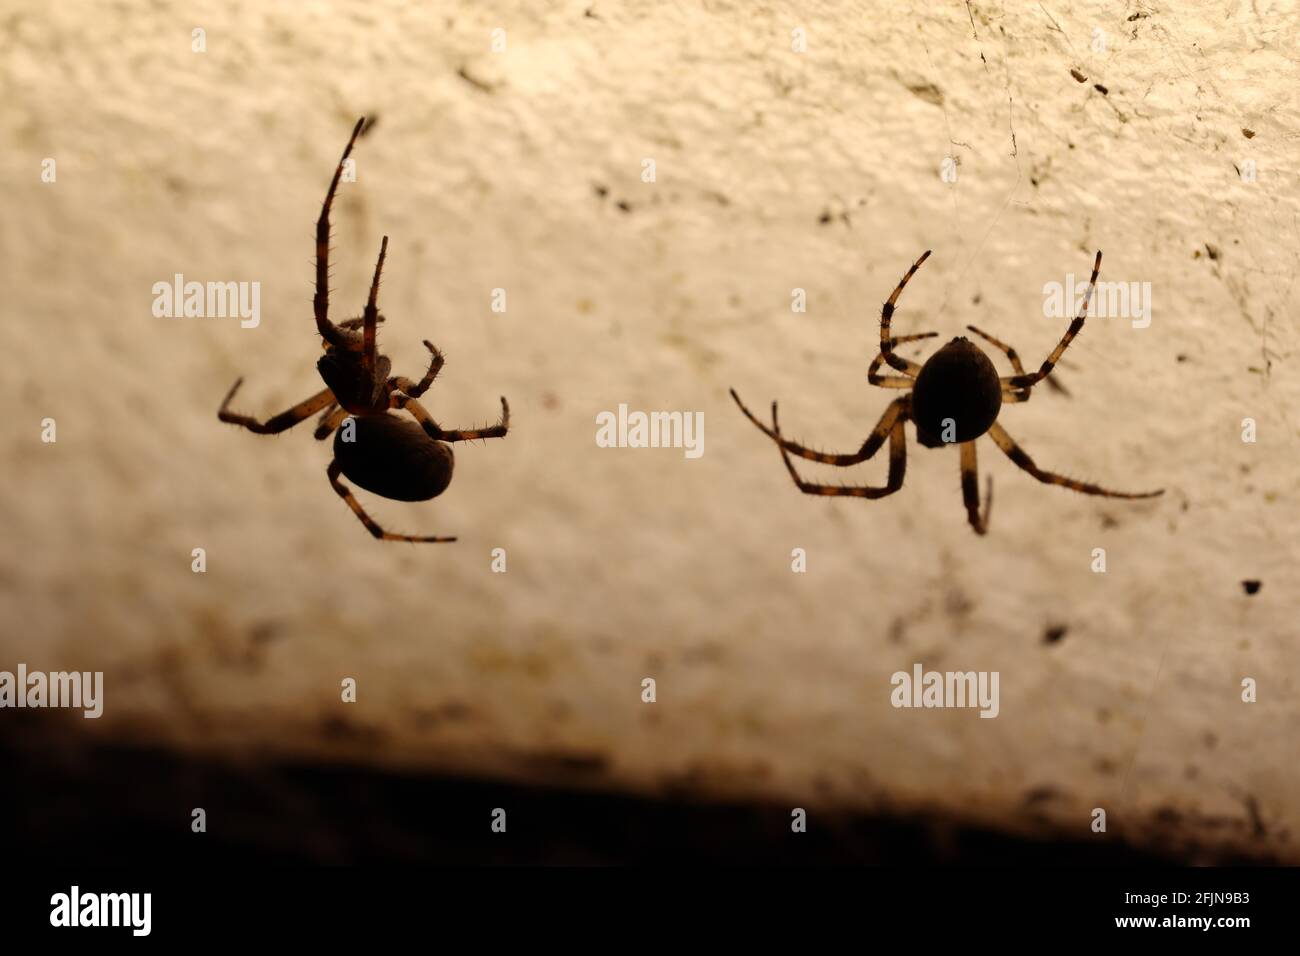 Zwei Spinnen, die über ihr Abendmenü diskutierten, nahmen eine Silhouette mit. Stockfoto